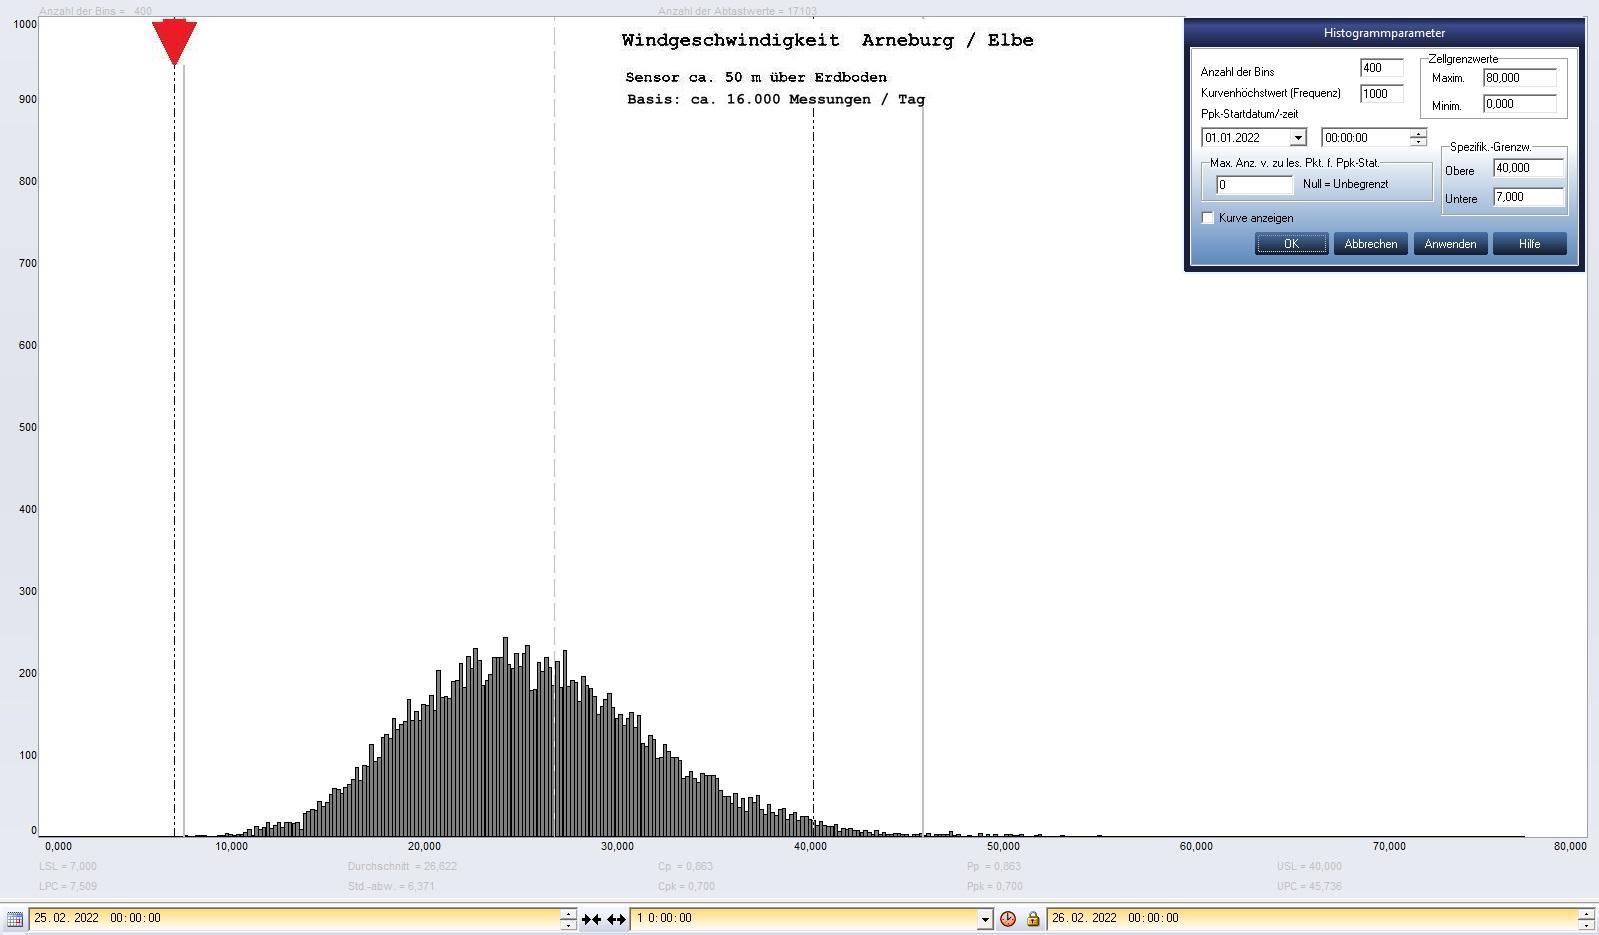 Arneburg Tages-Histogramm Winddaten, 25.02.2022
  Histogramm, Sensor auf Gebäude, ca. 50 m über Erdboden, Basis: 5s-Aufzeichnung